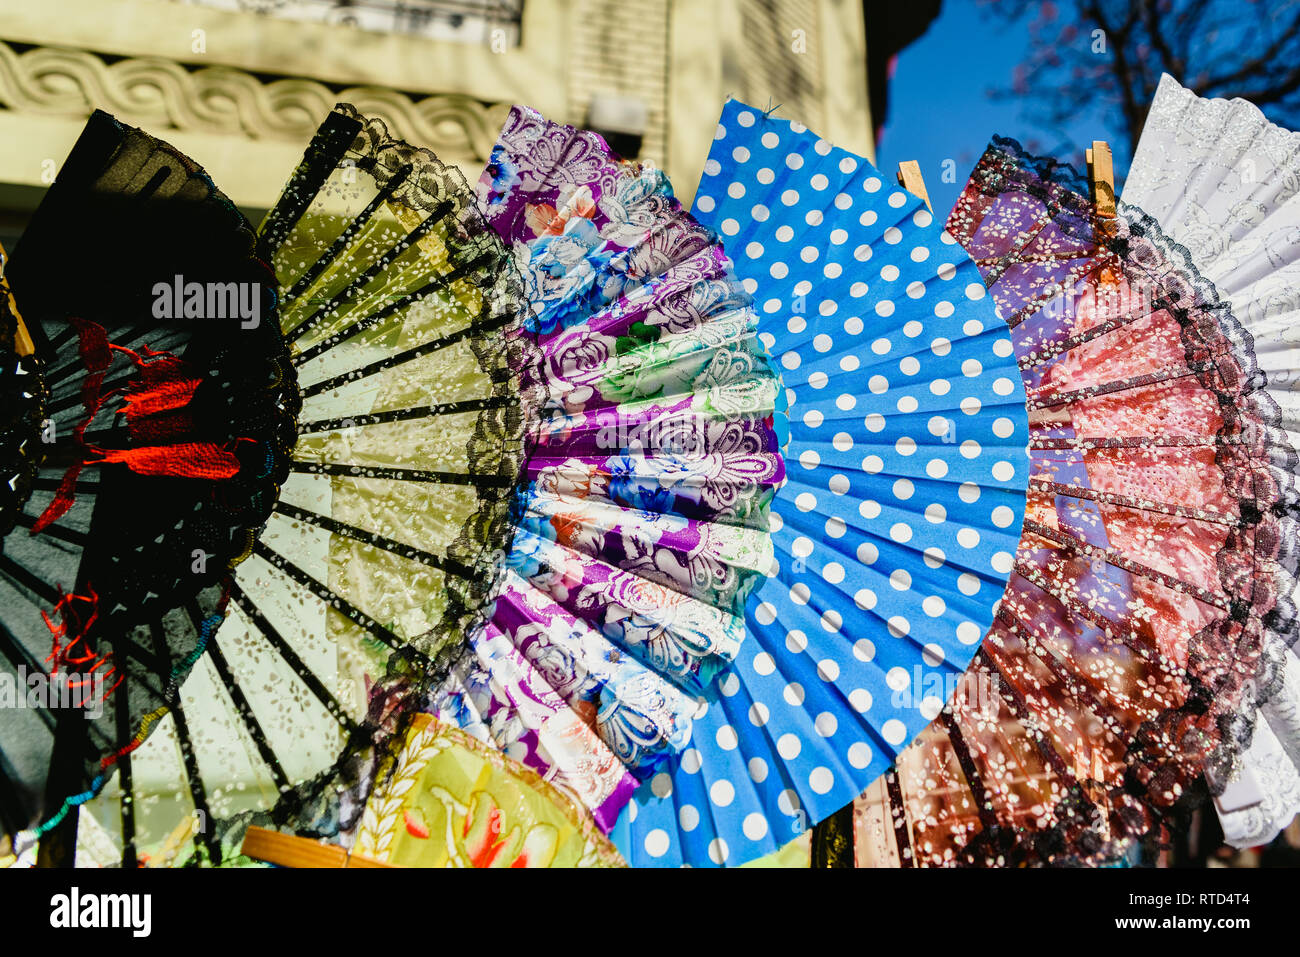 Valencia, Spagna - 24 Febbraio 2019: tipico colorato flamenco spagnolo ventilatori per la vendita in un mercato di strada in primavera. Foto Stock